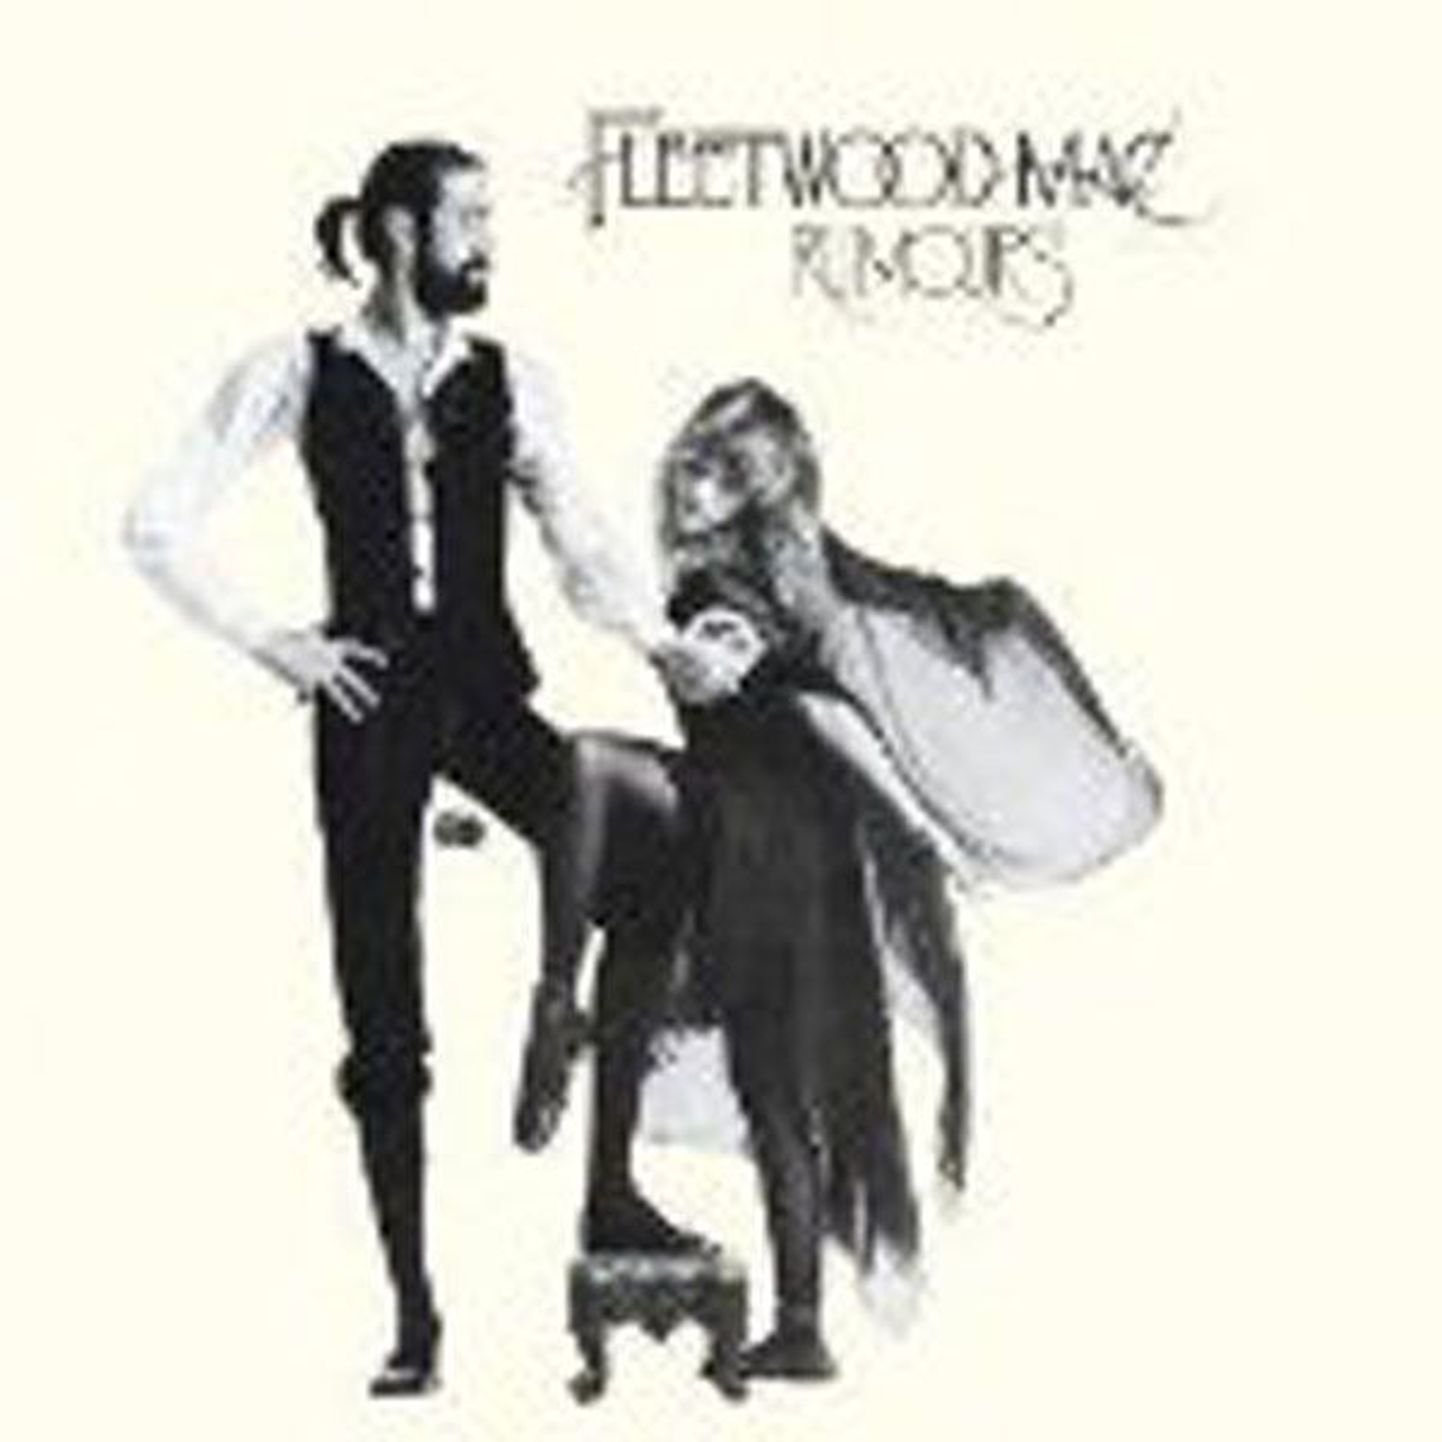 Fleetwood Mac
Rumours 
(Warner)